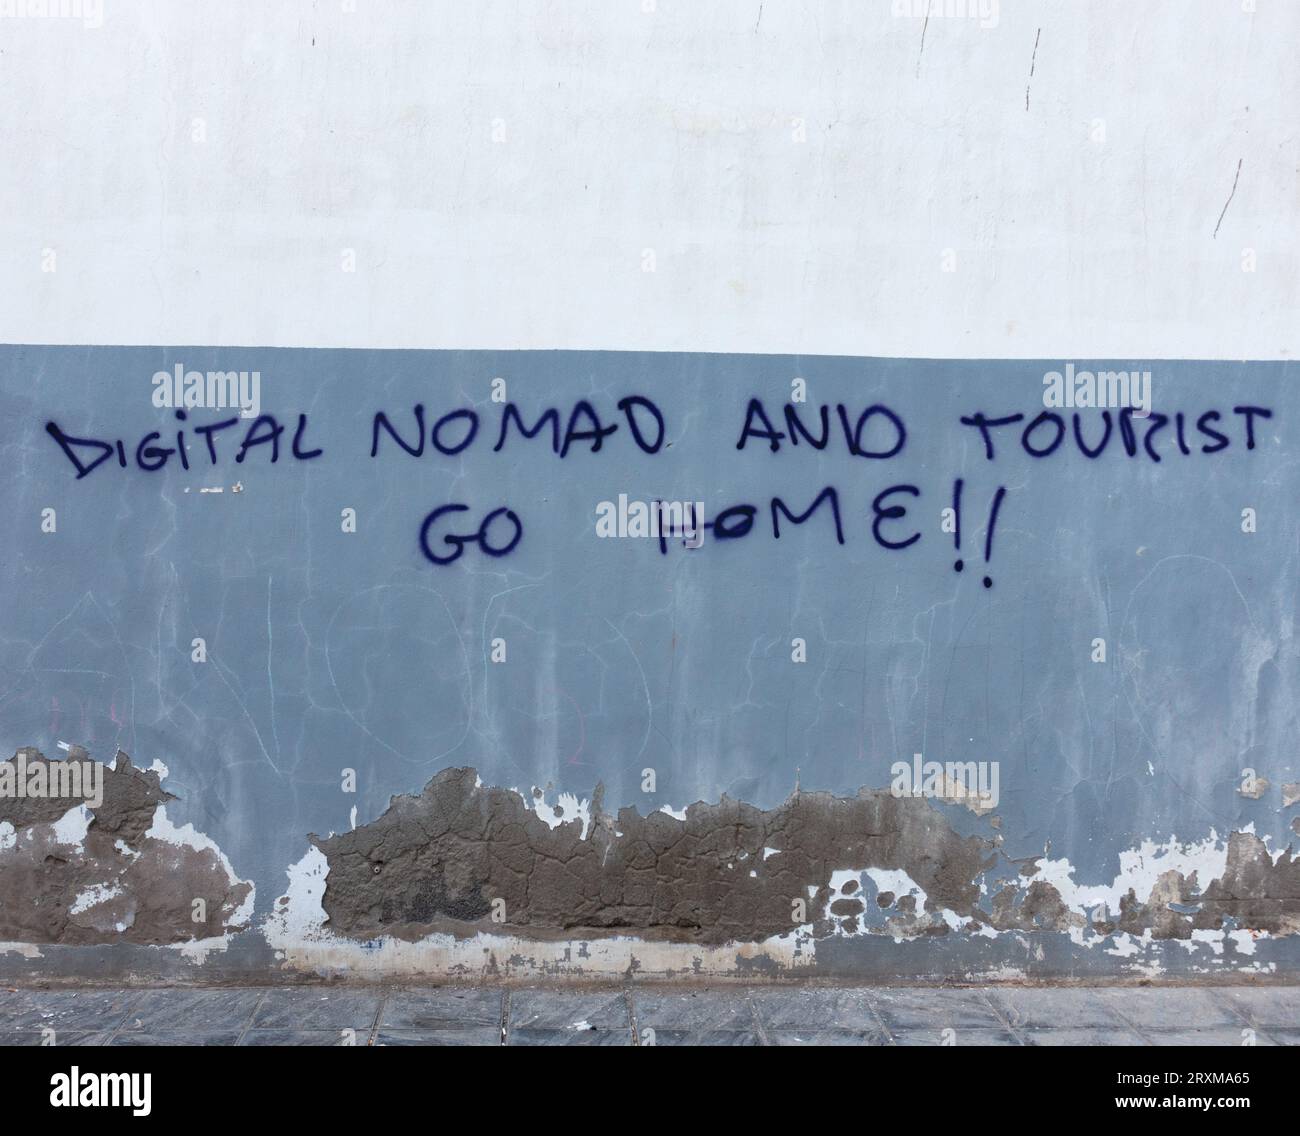 Nomade digitale e turista vanno a casa graffiti sul muro in Spagna Foto Stock